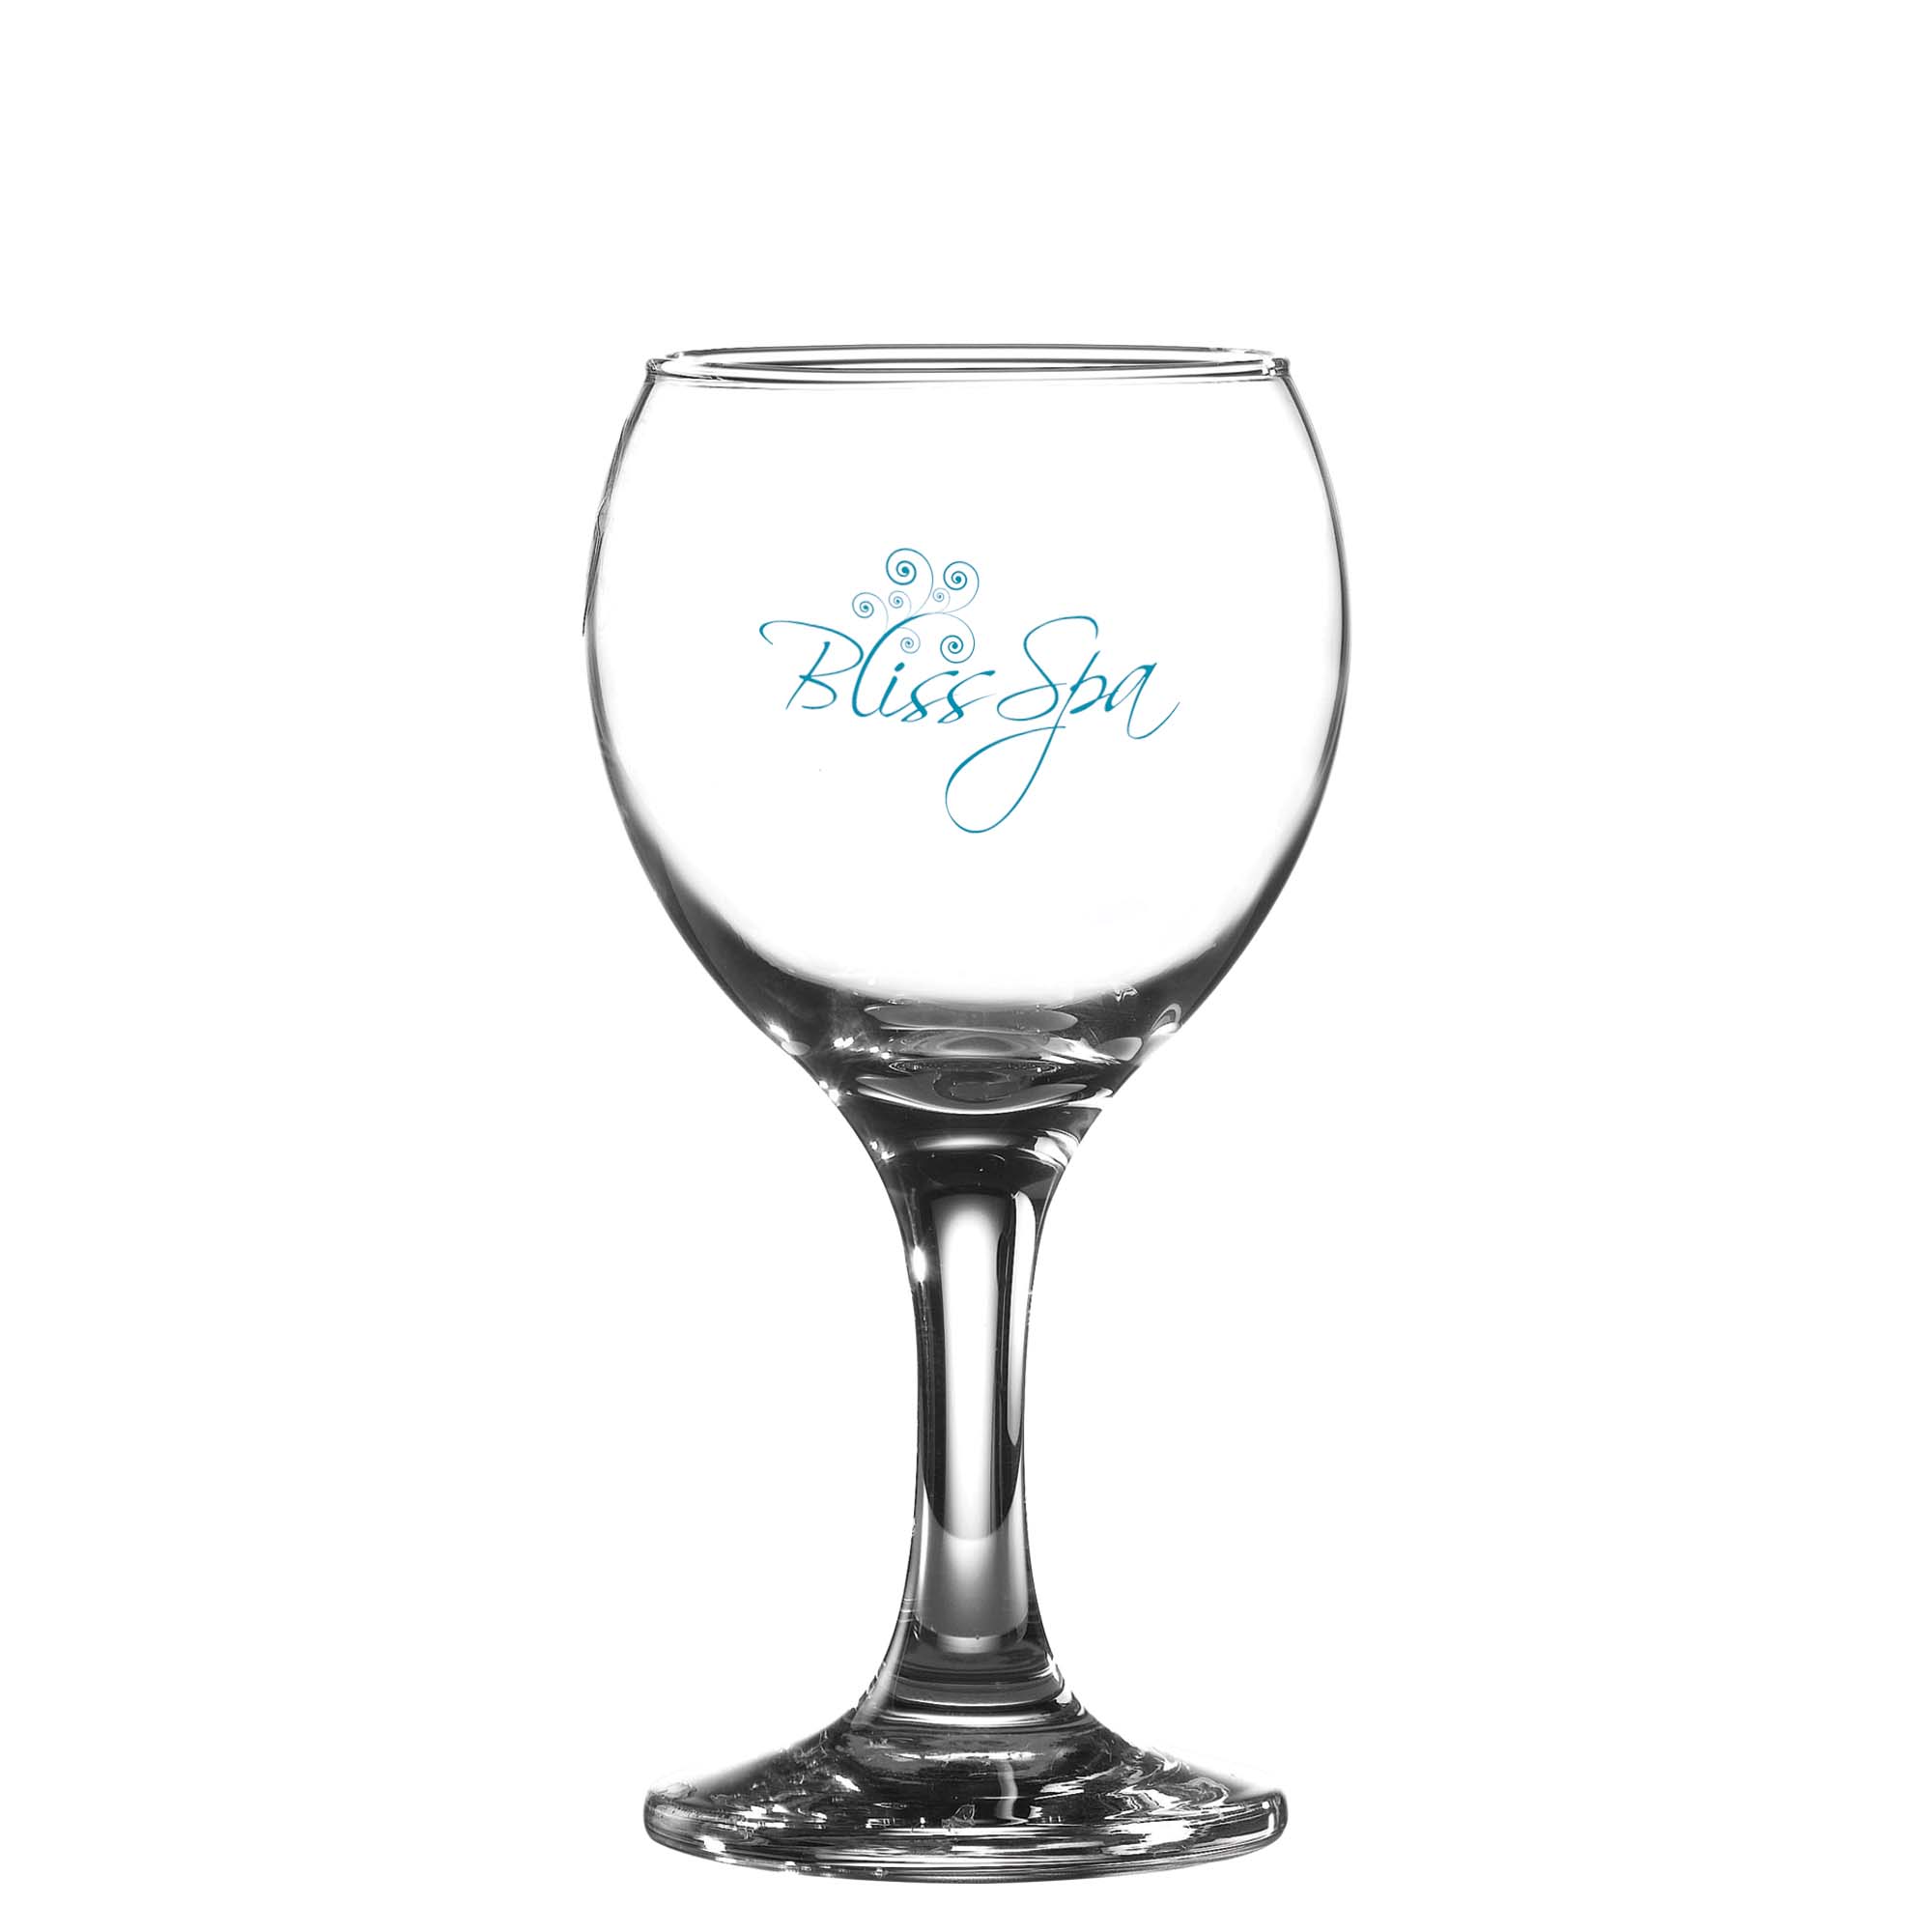 Misket Wine Glass (260ml/9oz)